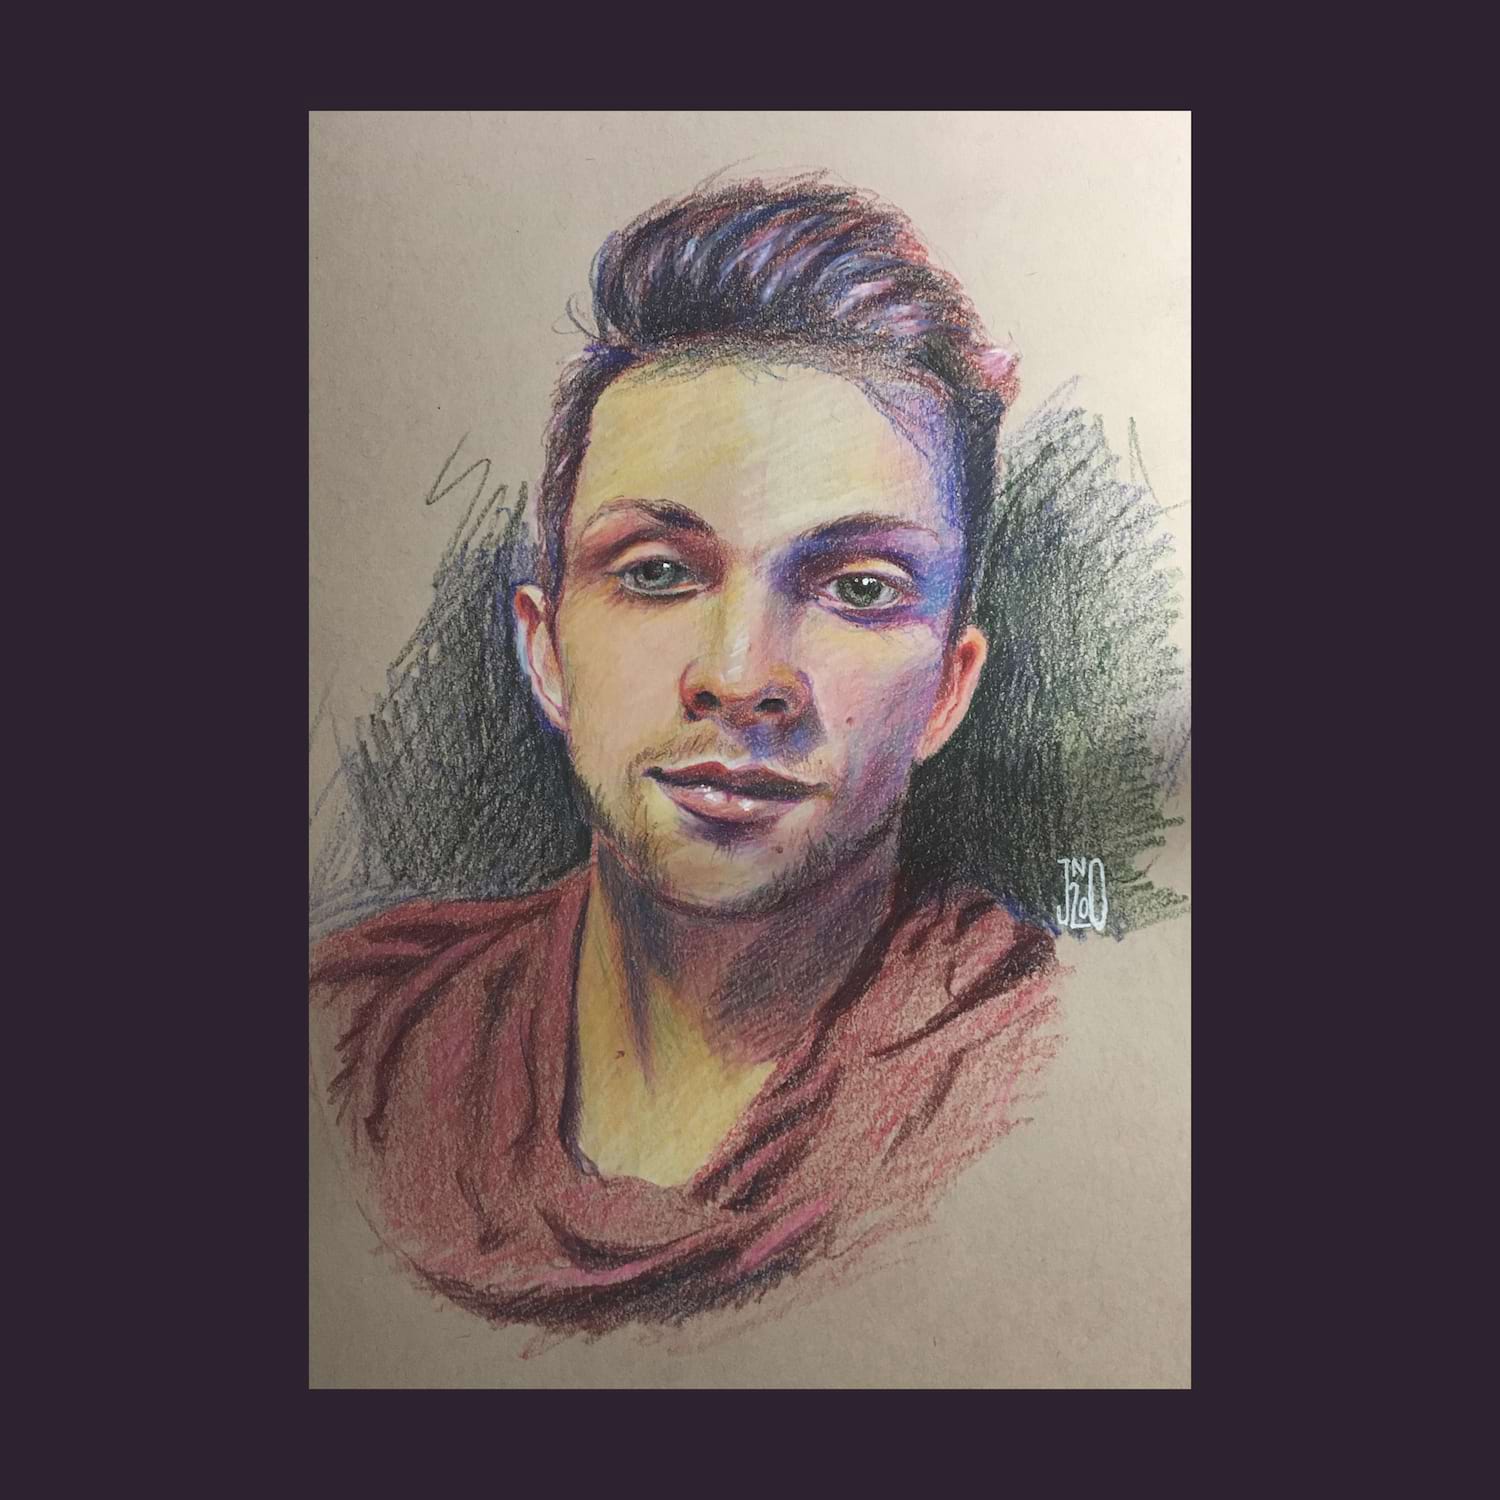  Jordan Oakey. Portrait of Chris. Prismacolor pencil. 2020.